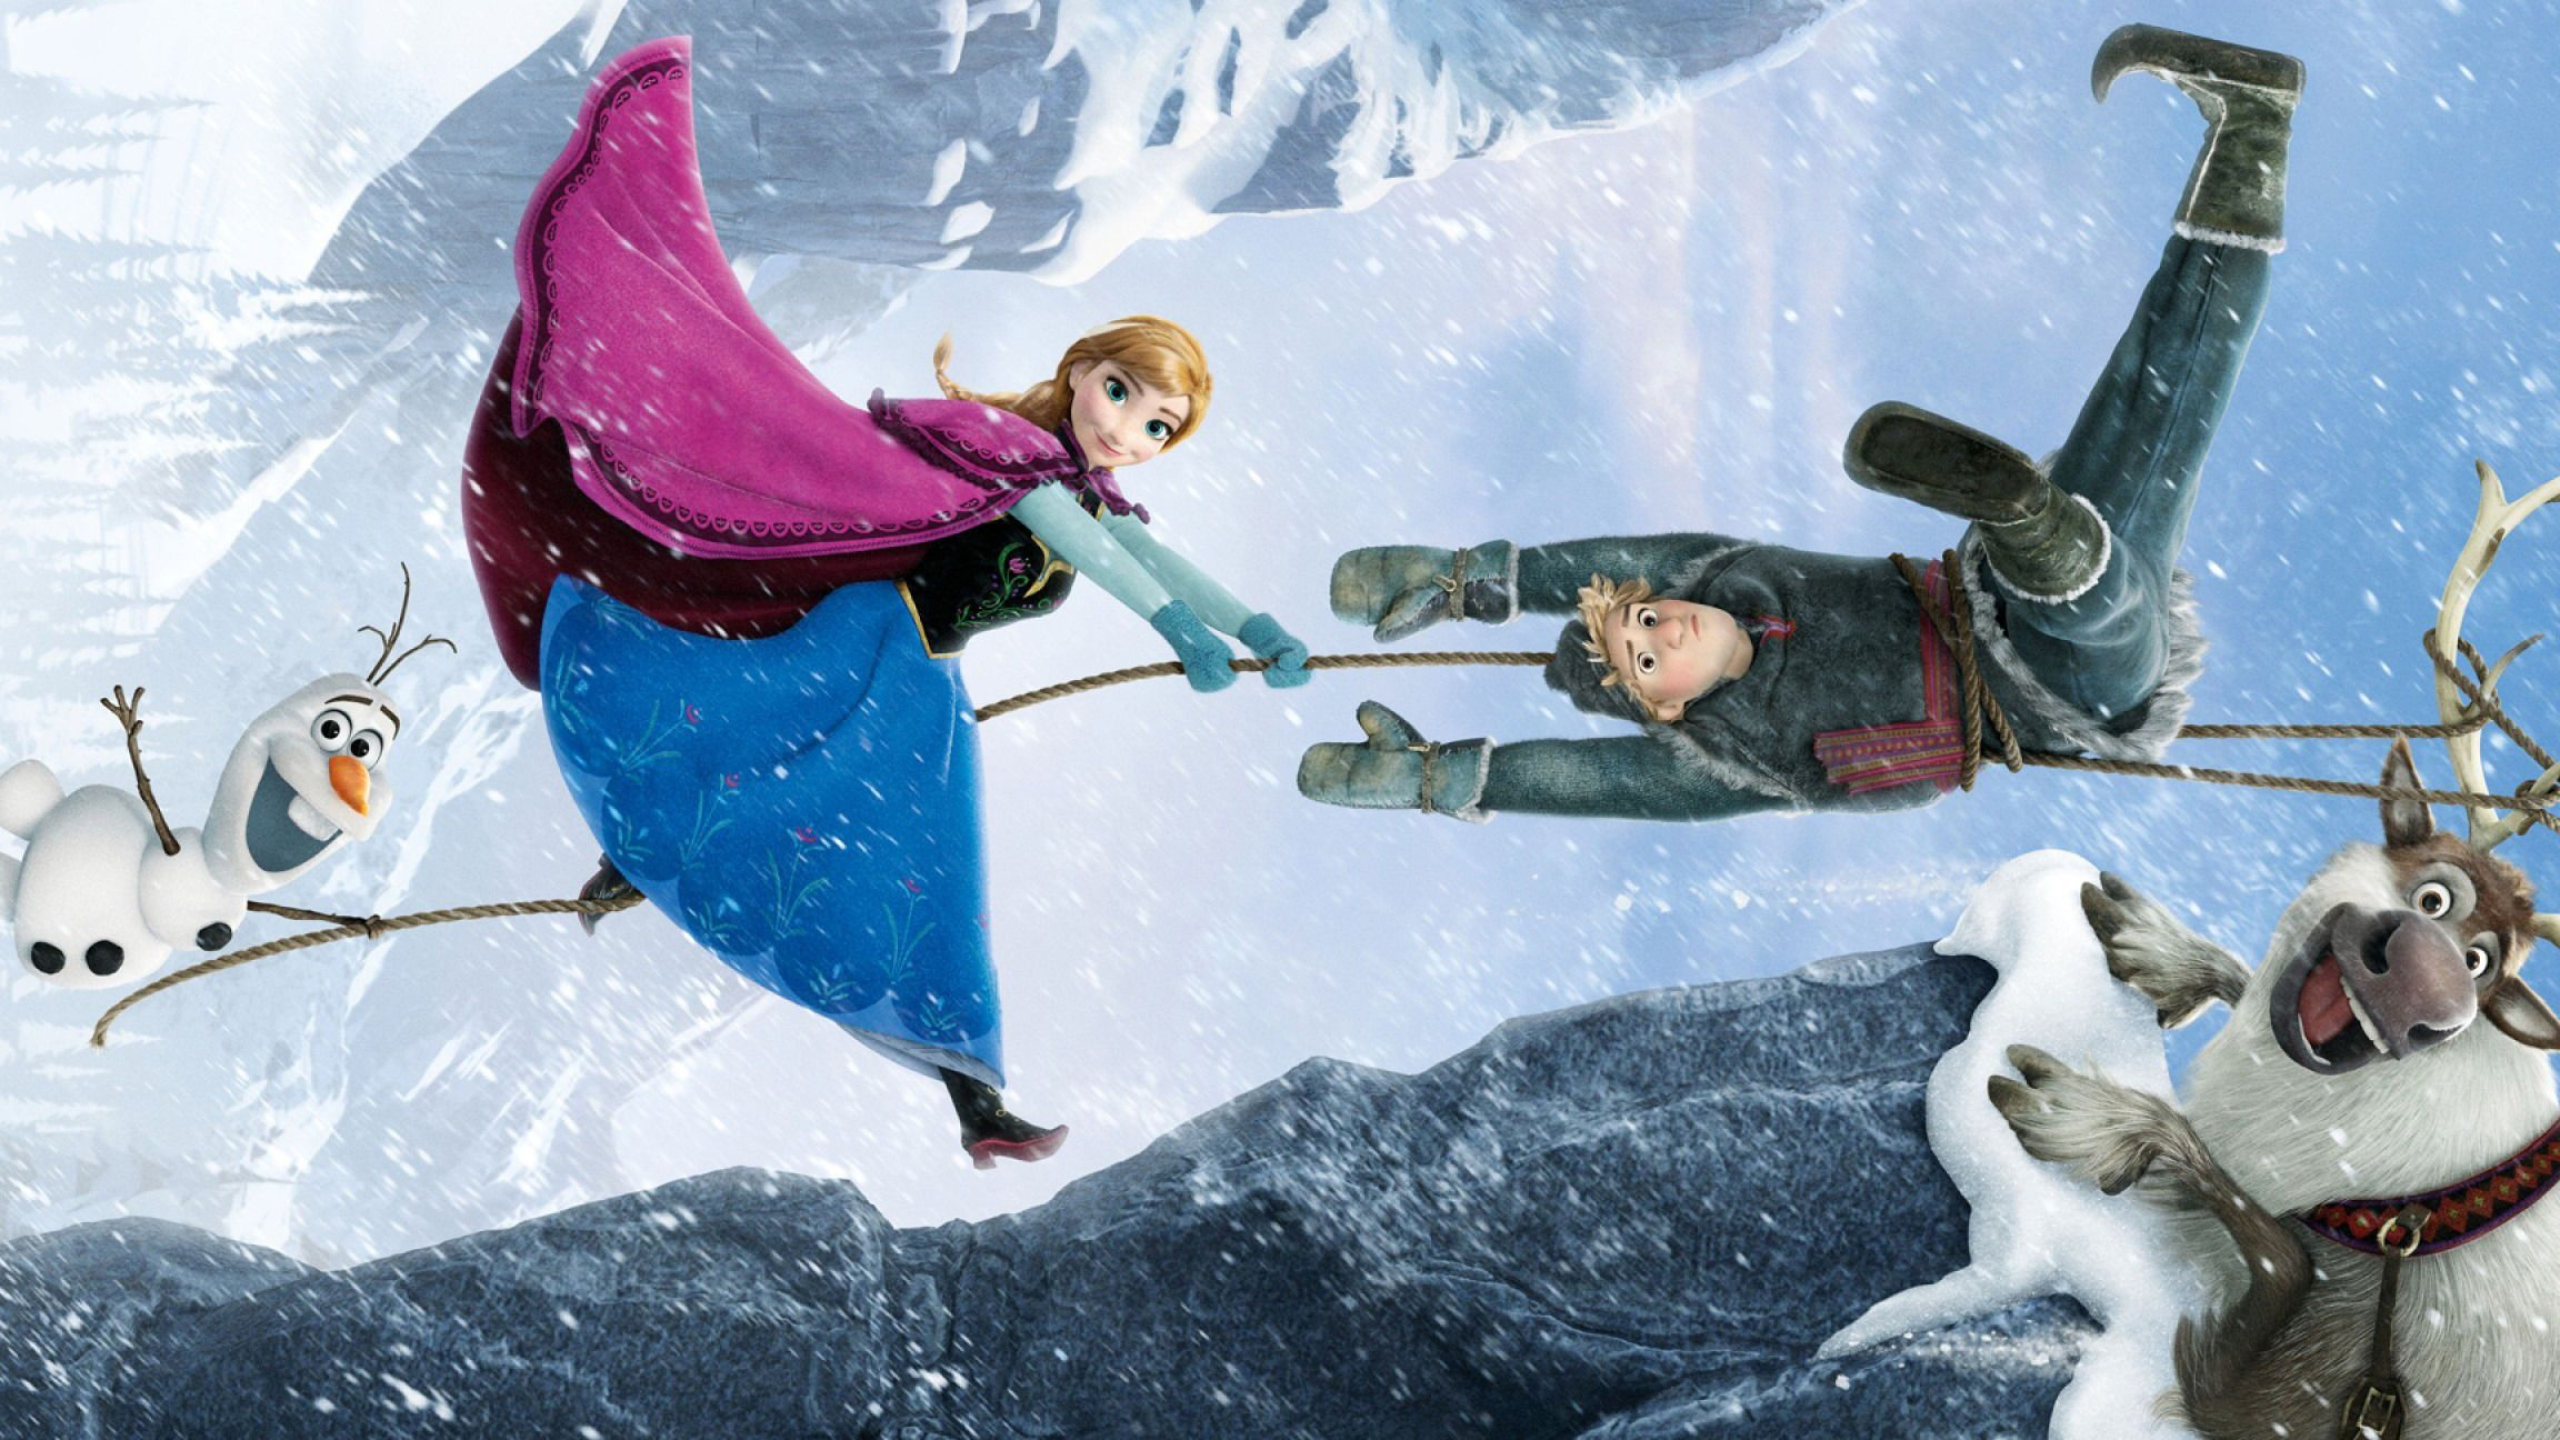 Kristoff, Frozen movie wallpaper, 2560x1440 HD Desktop